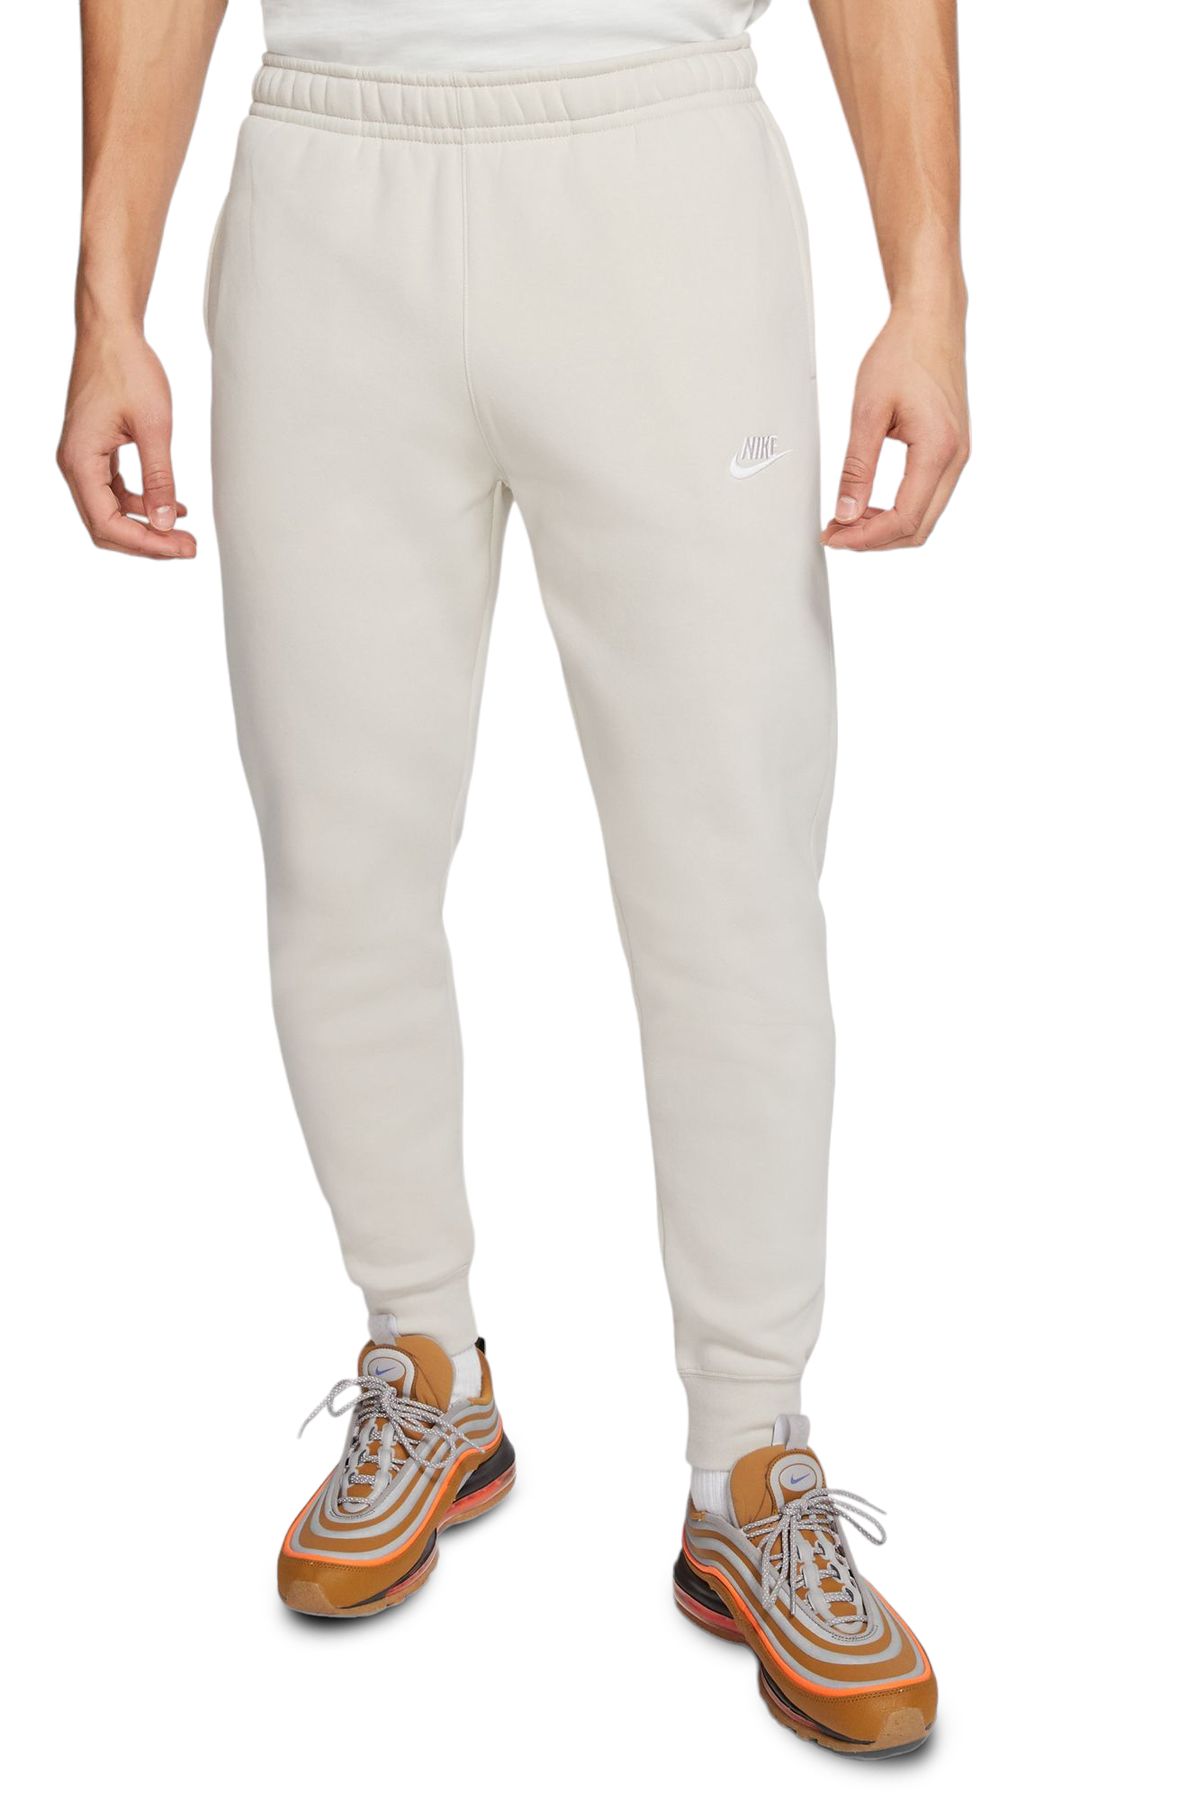 Nike Sportswear Tech Fleece Joggers Light Bordeaux/White - US